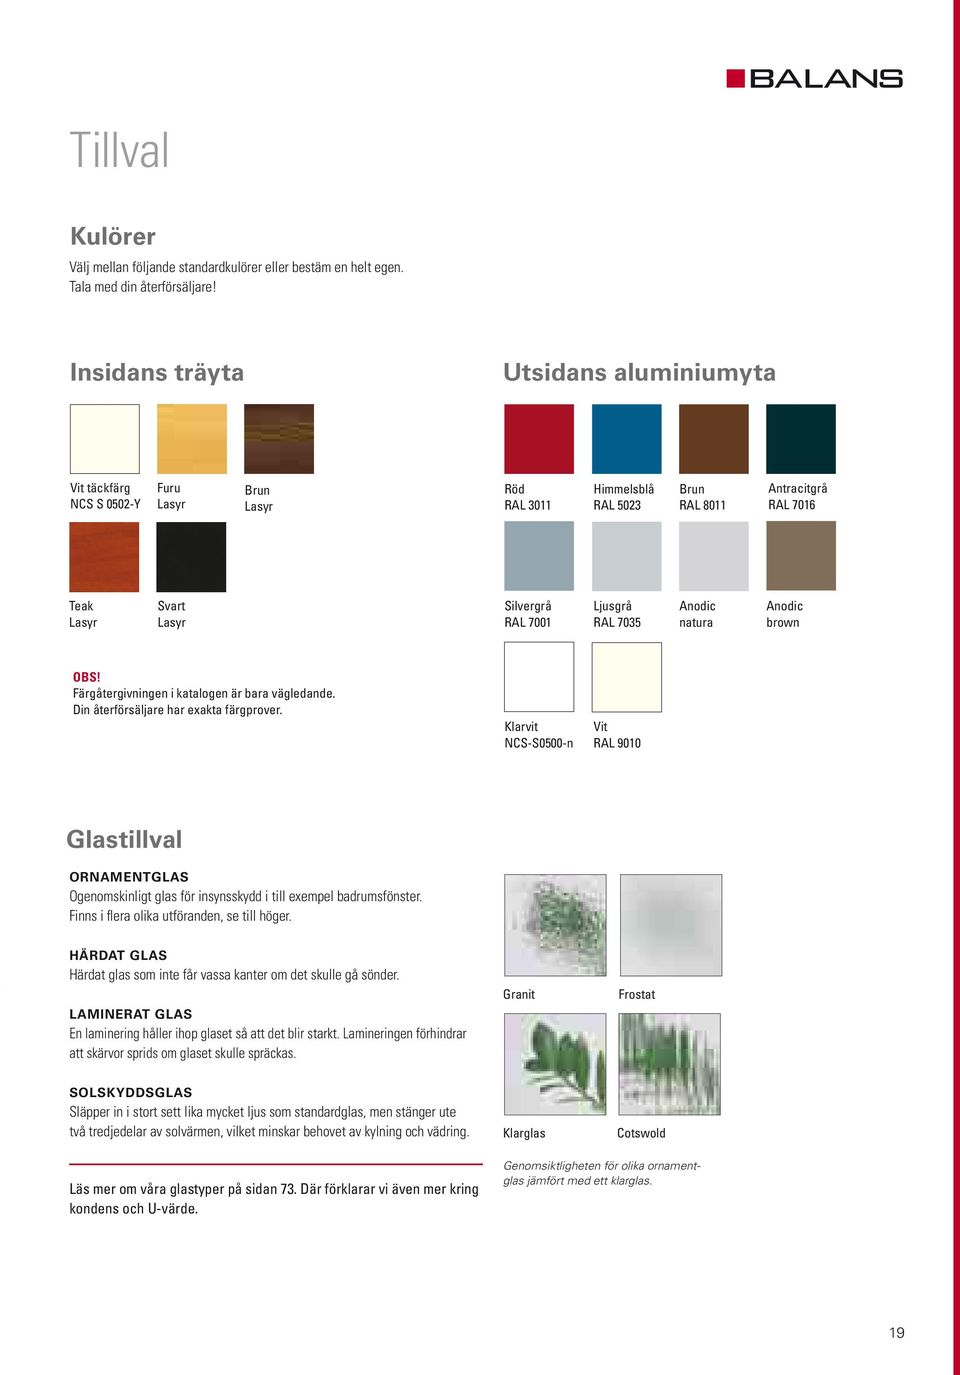 Ljusgrå RAL 7035 Anodic natura Anodic brown OBS! Färgåtergivningen i katalogen är bara vägledande. Din återförsäljare har exakta färgprover.